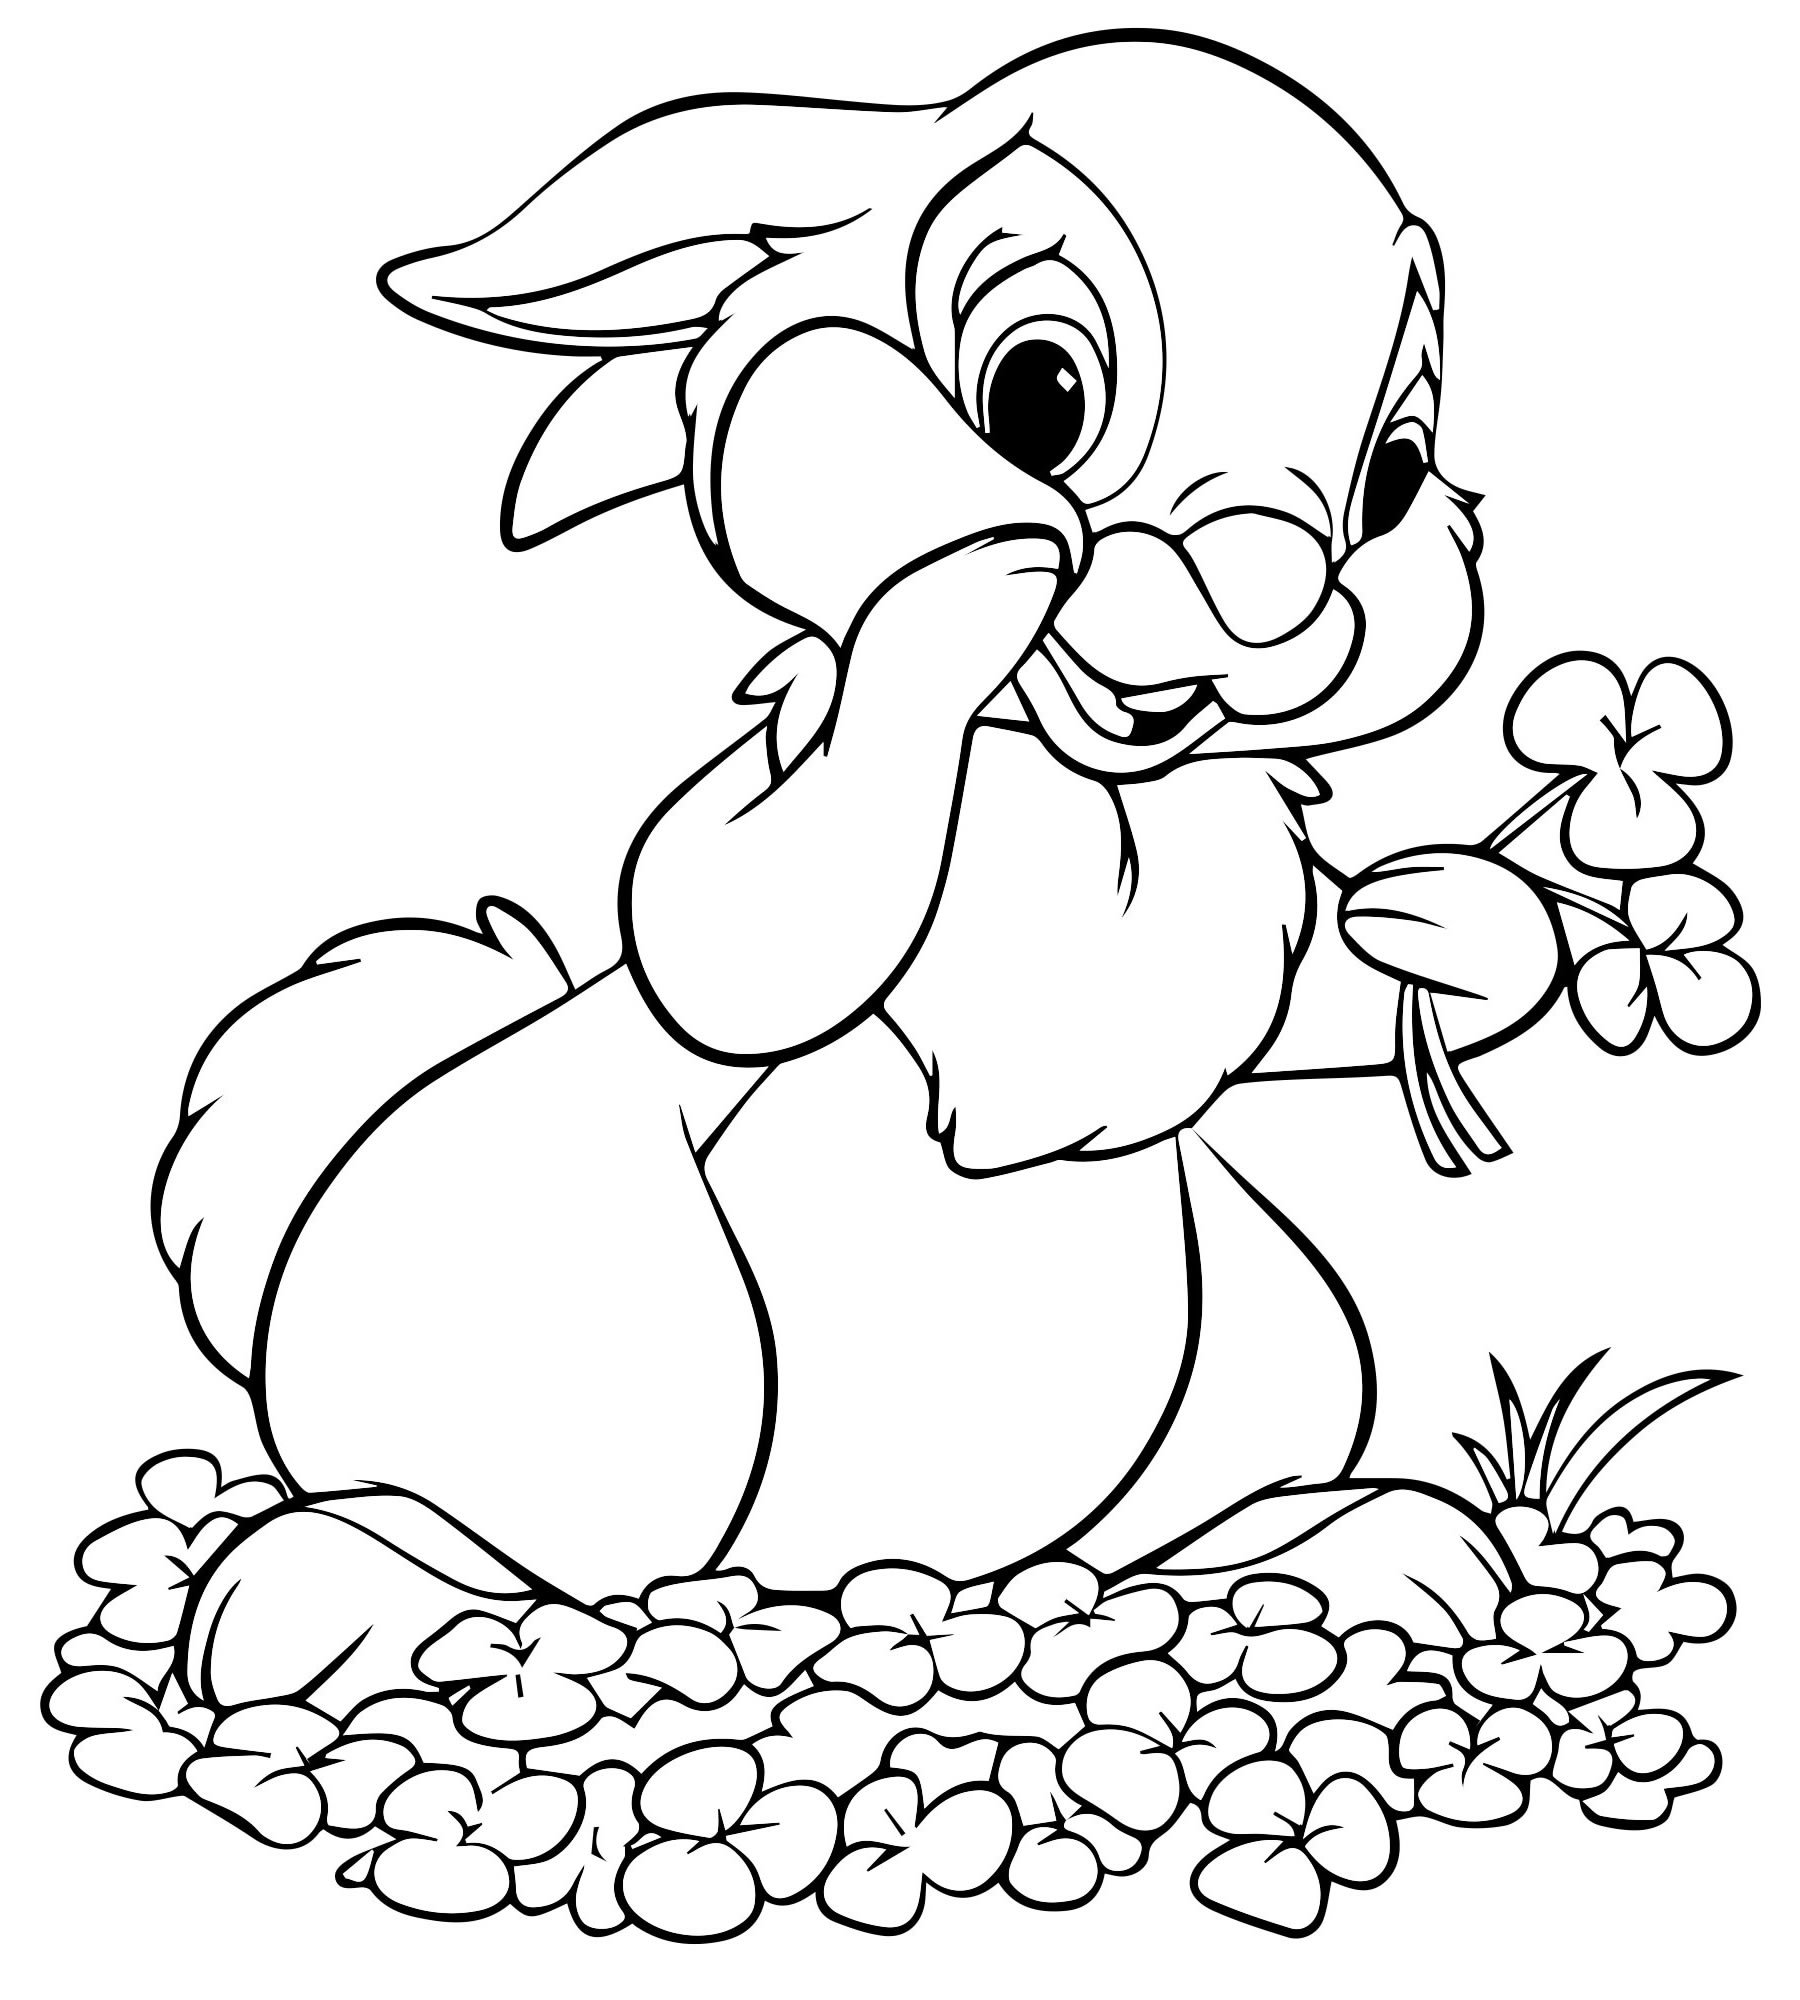 Фото Snuggable coloring page bunny schnufel